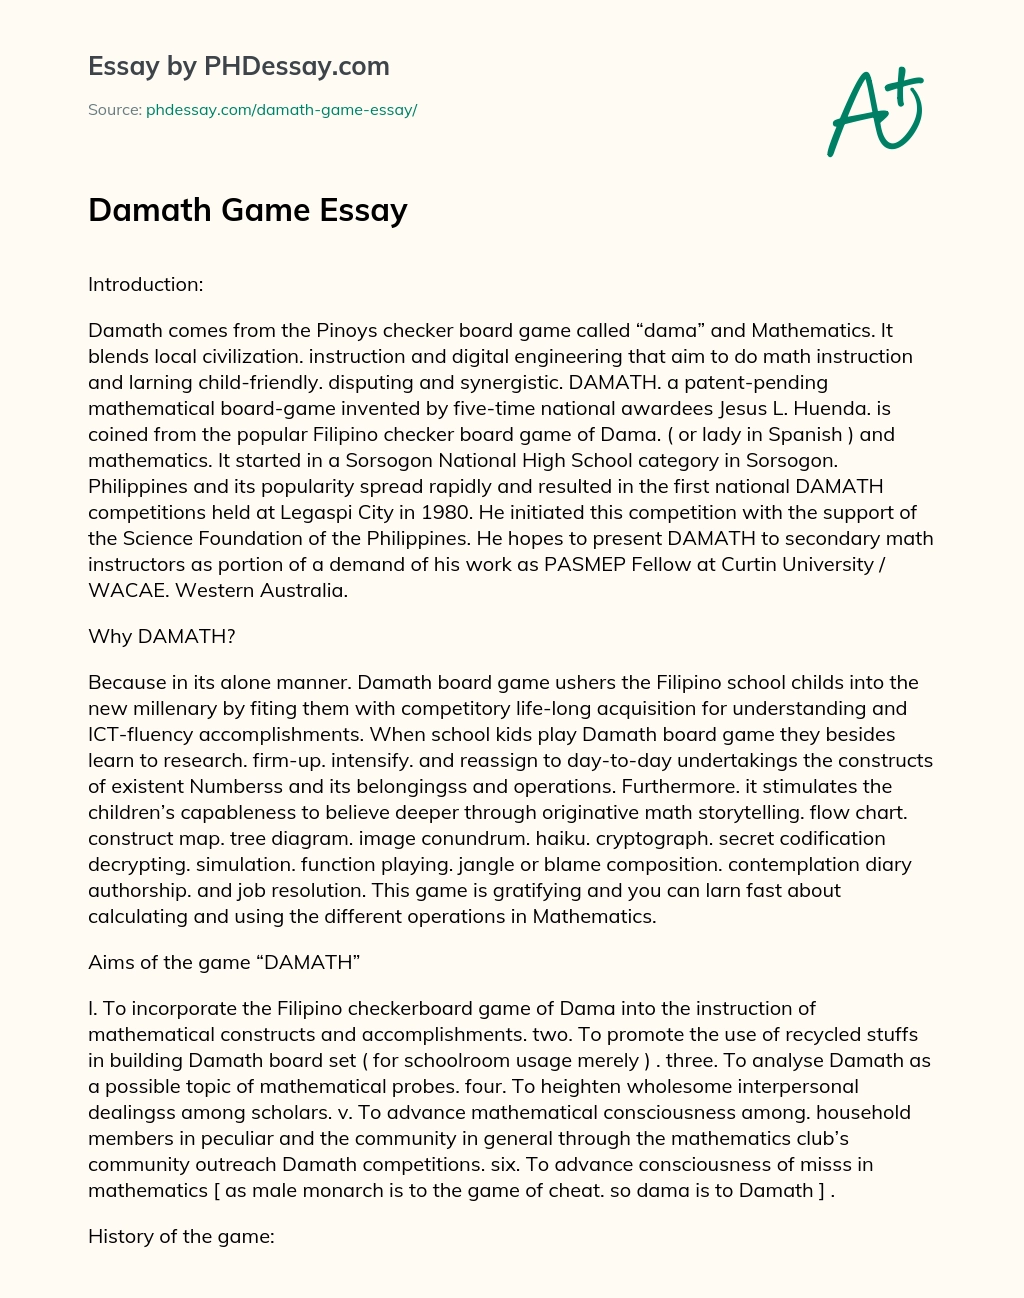 Damath Game Essay essay